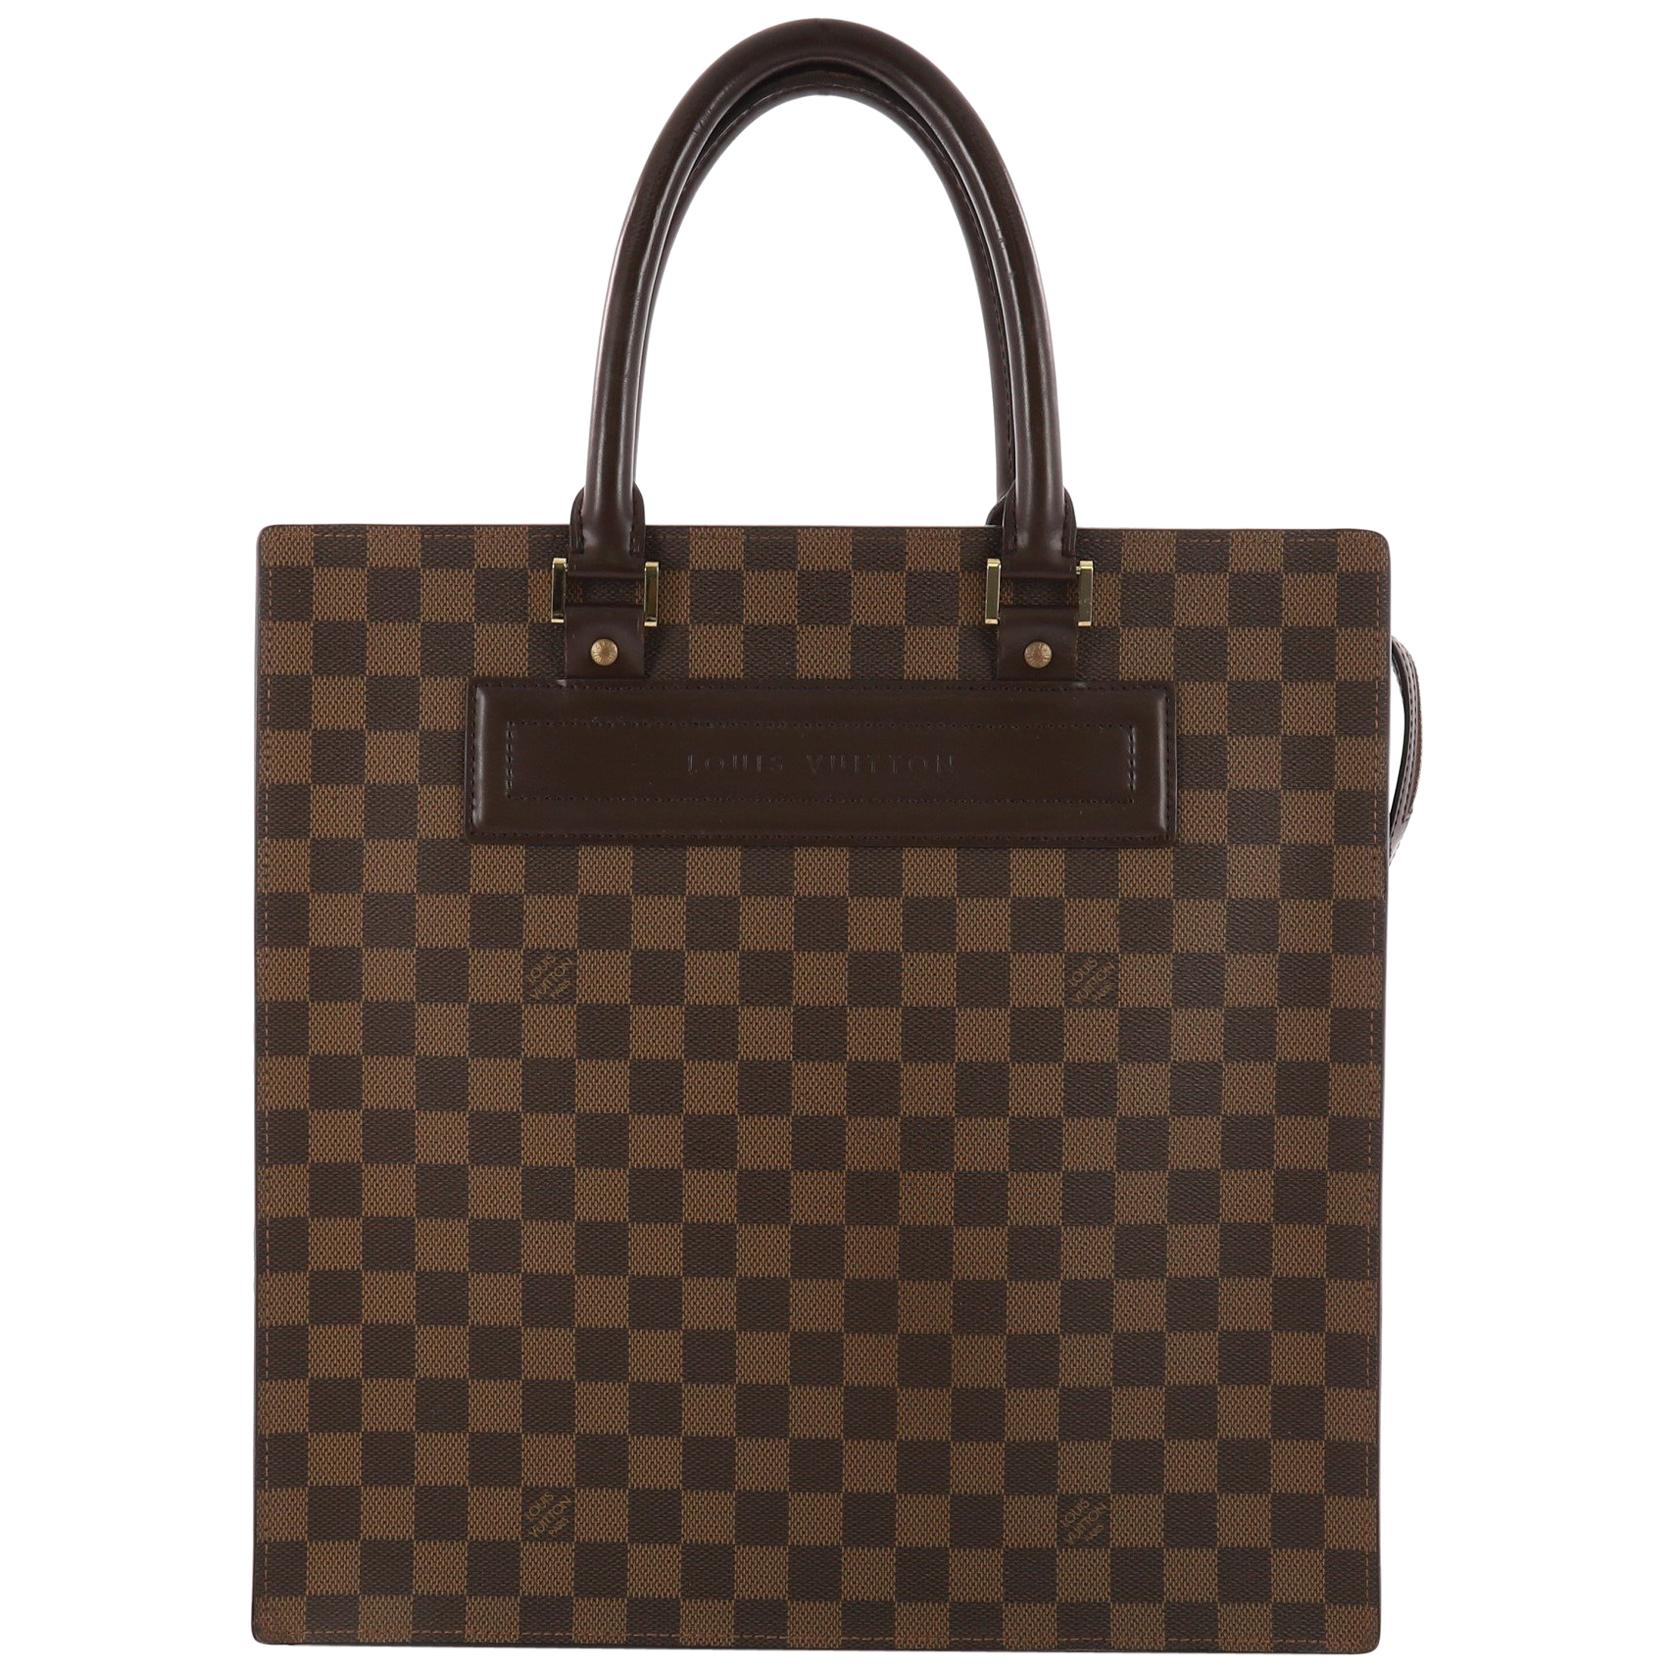 Louis Vuitton Venice Sac Plat Handbag Damier GM